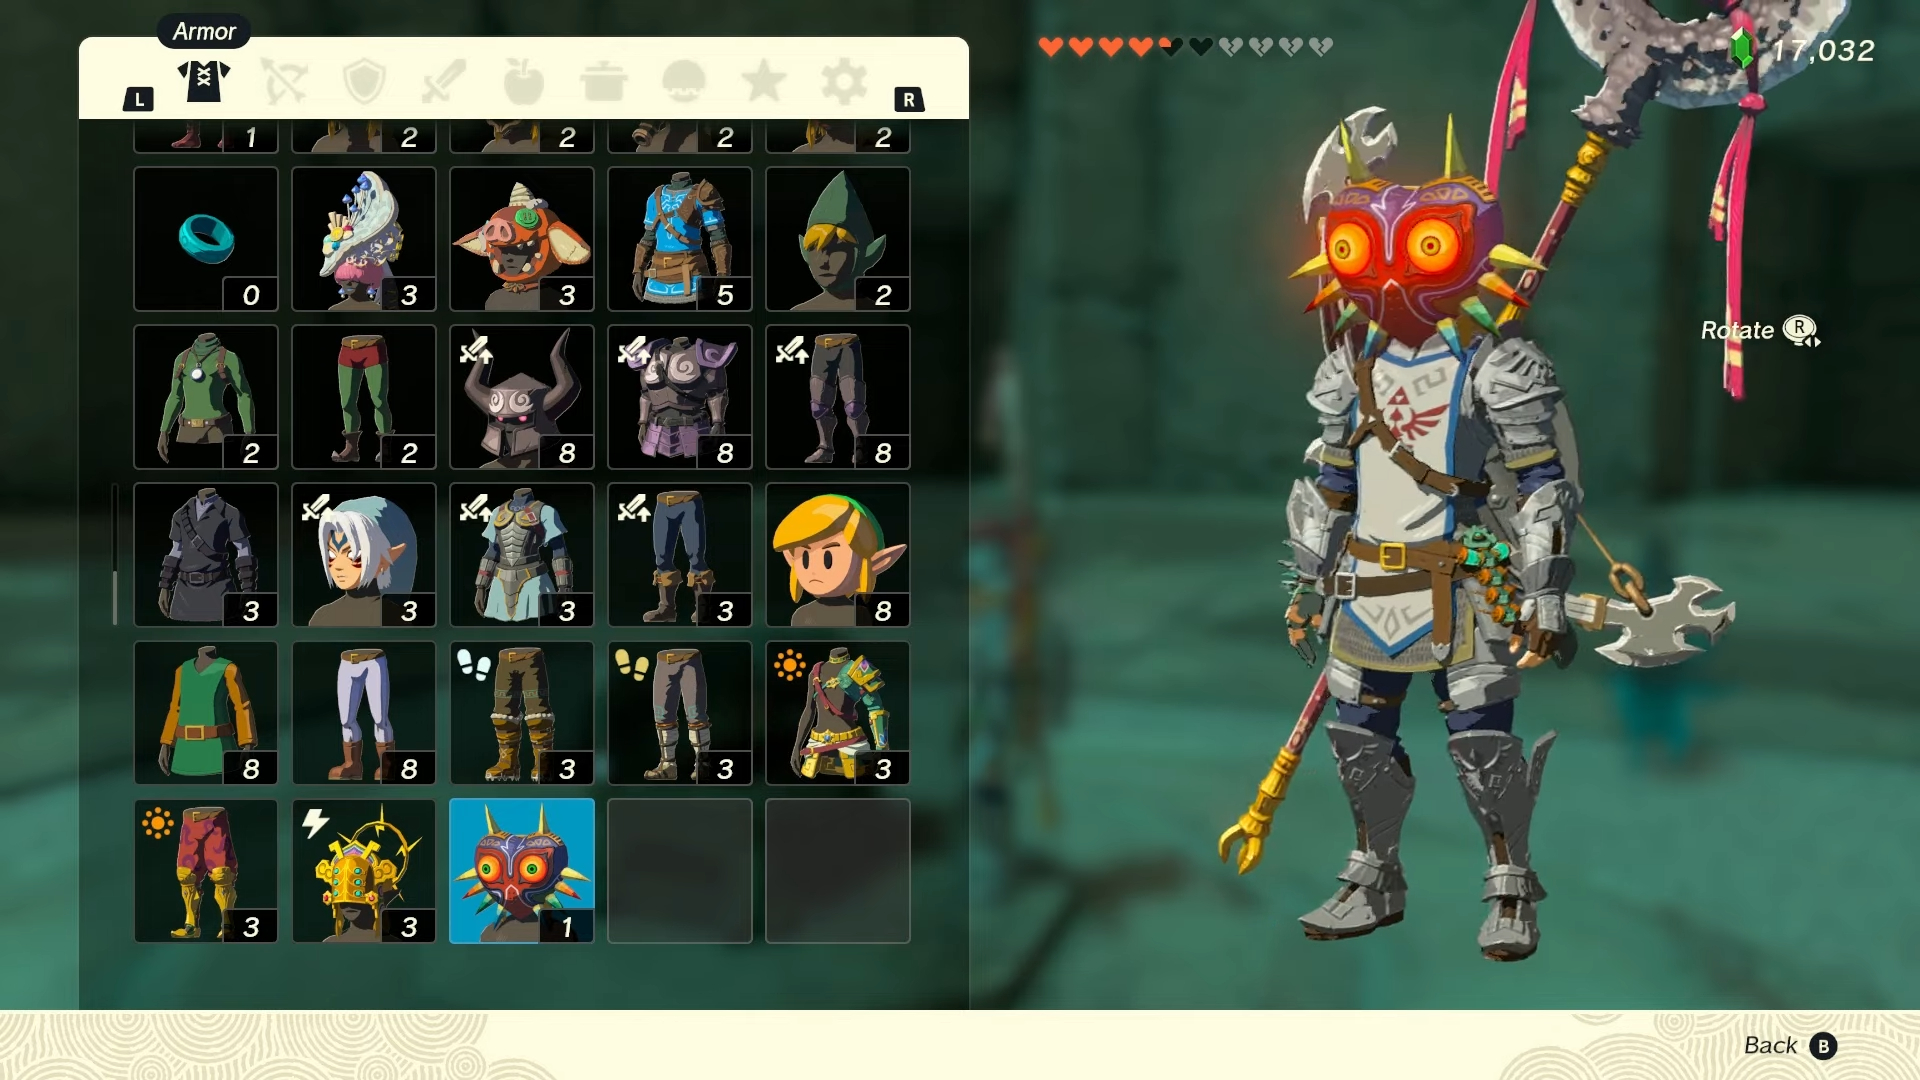 Link wearing Majora's Mask.